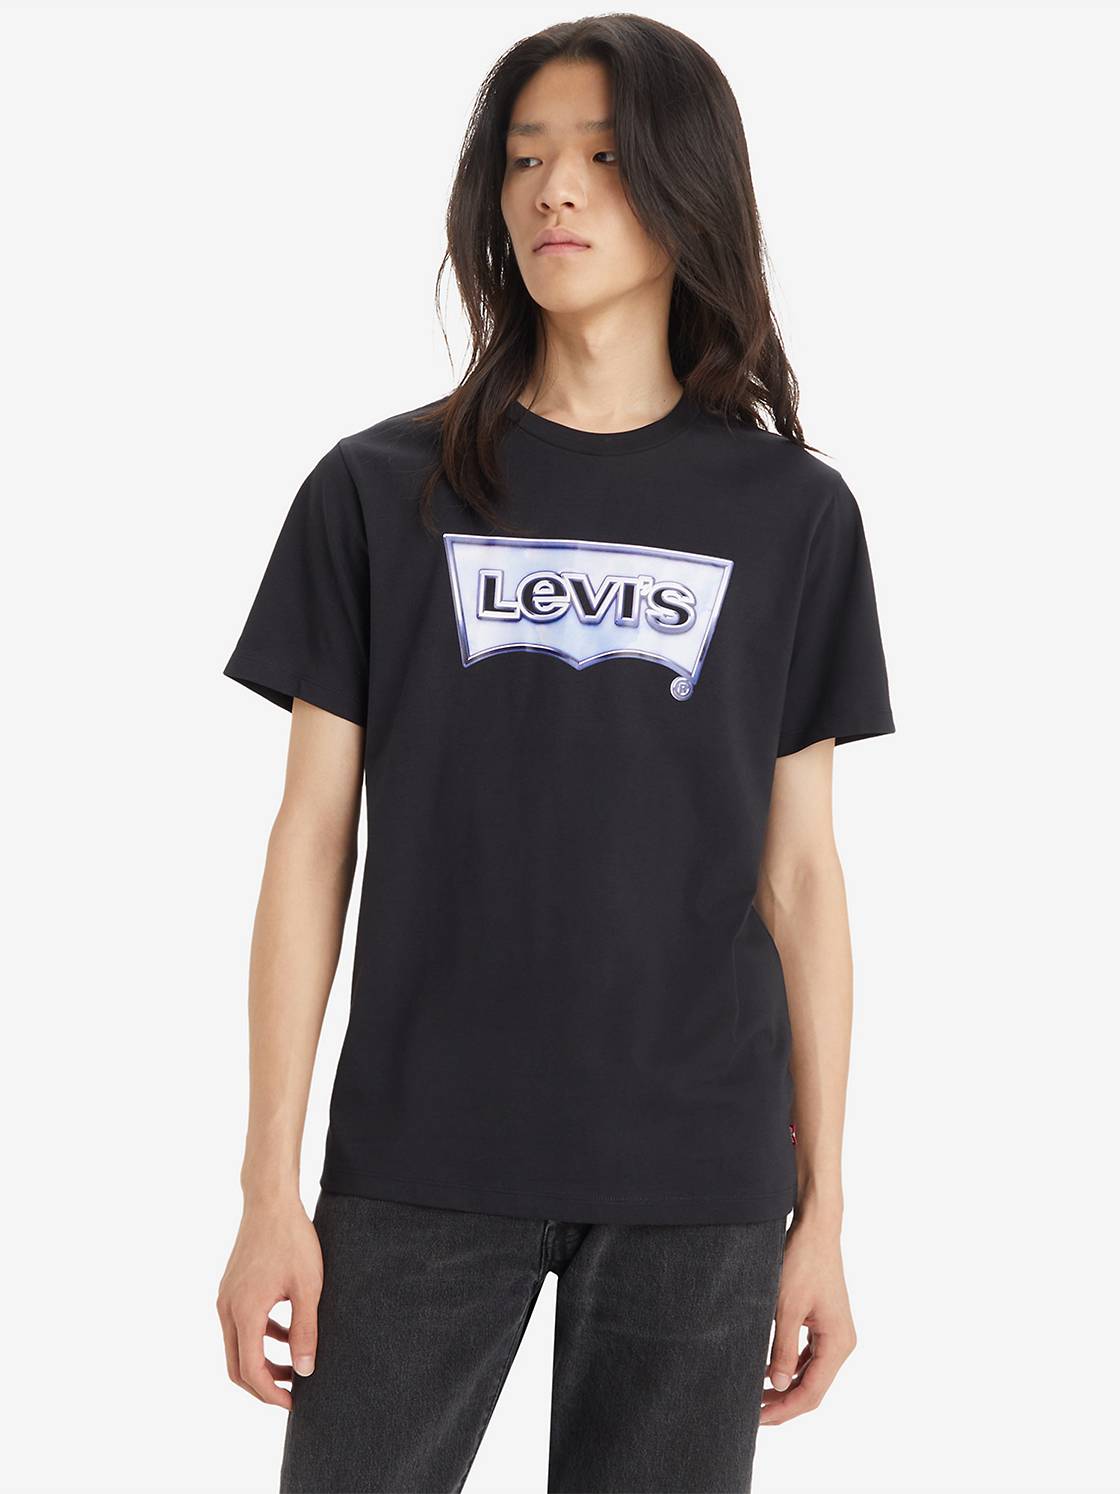 Tårer klaver imperium Men's Shirts - Shop T-Shirts, Plaid, Western & More | Levi's® US